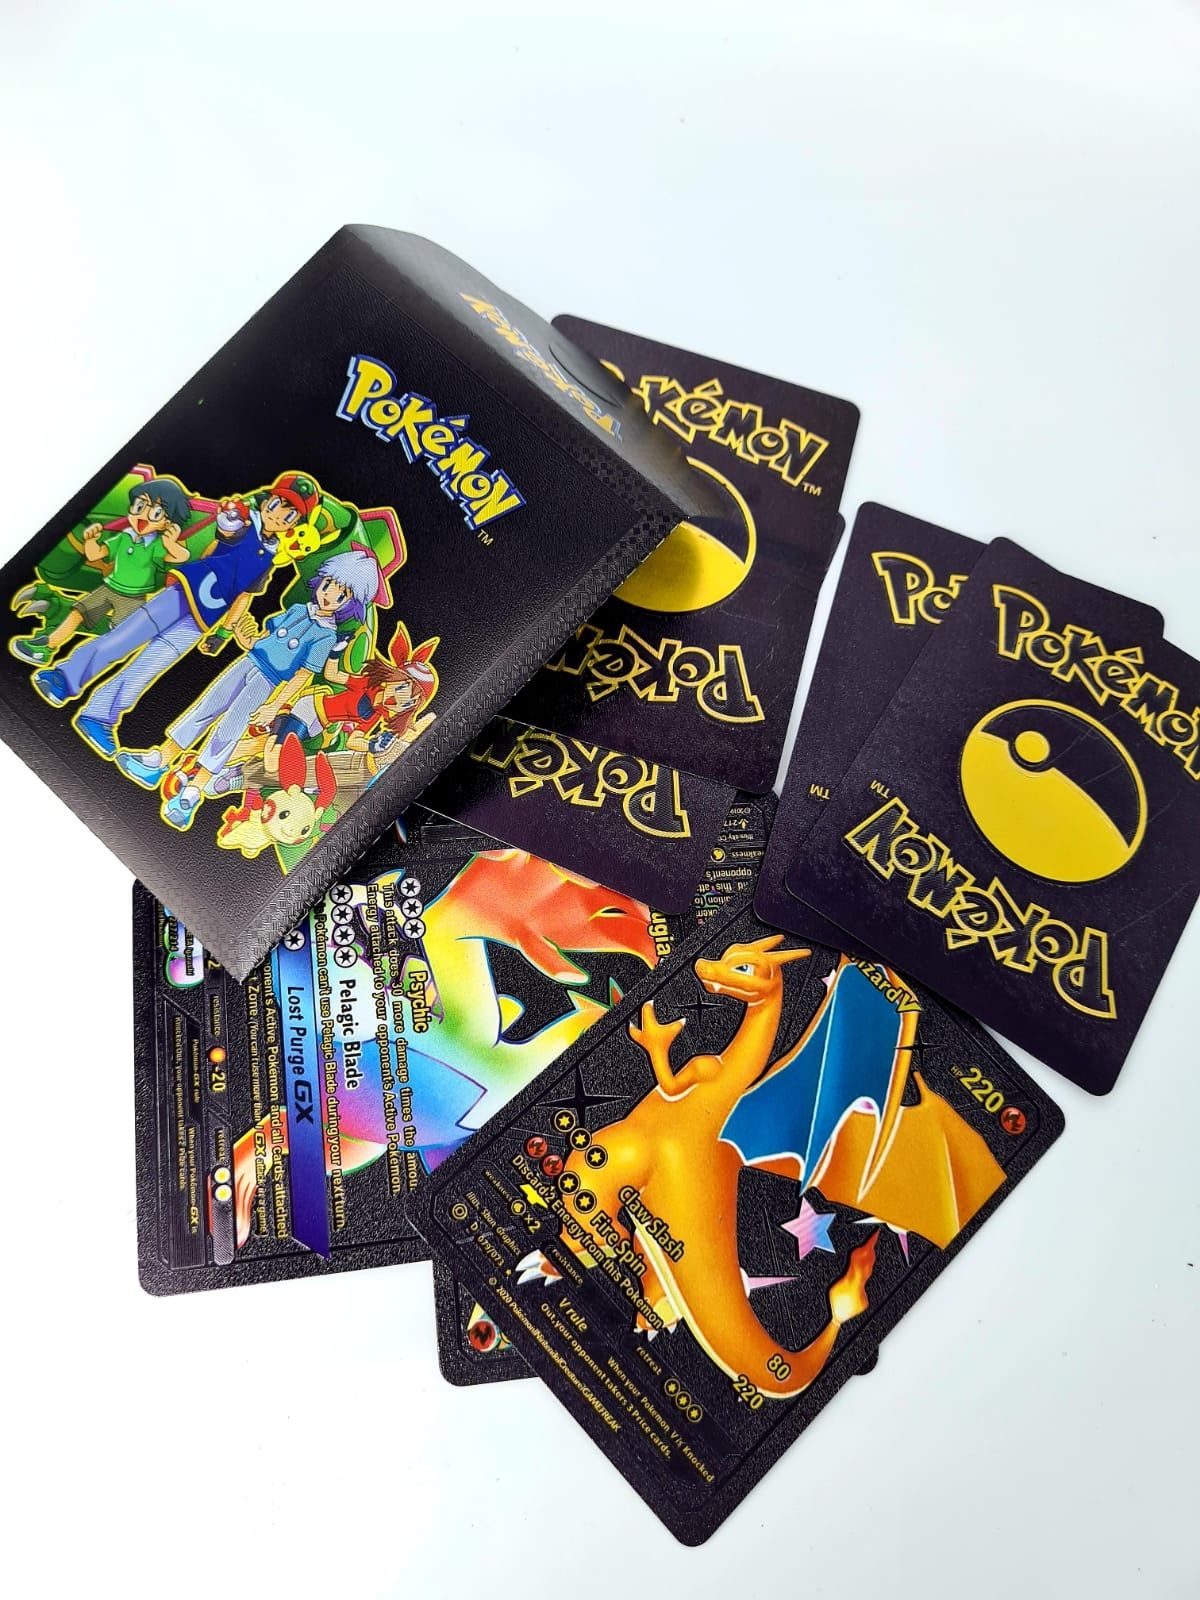 Nowy zestaw czarnych kart Pokemon w etui - zabawki